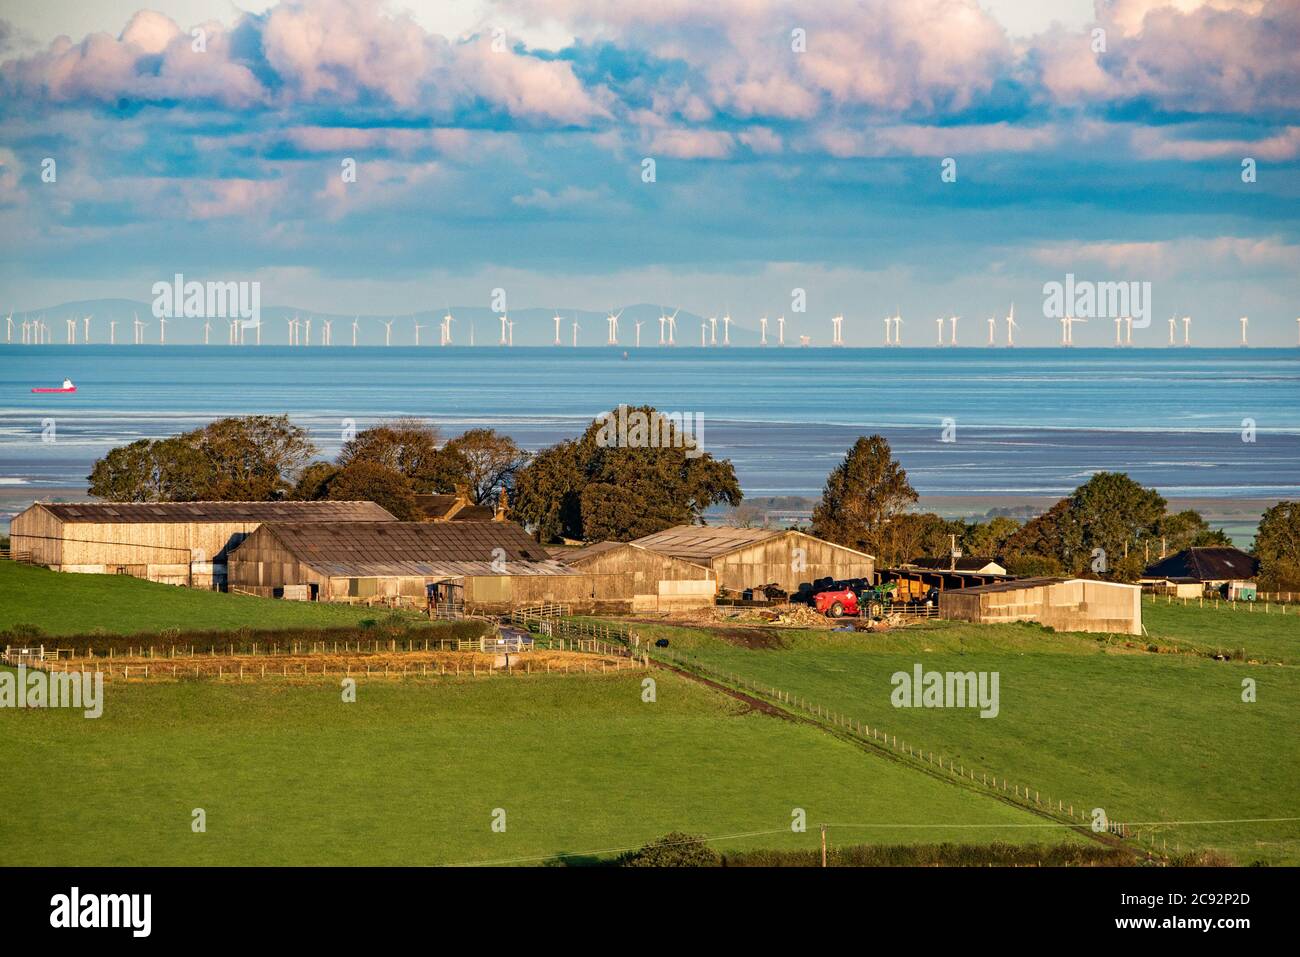 Vue sur le parc éolien de Walney, dans la mer d'Irlande, le deuxième plus grand au monde avec 189 turbines. L'île de Man est en arrière-plan. Banque D'Images